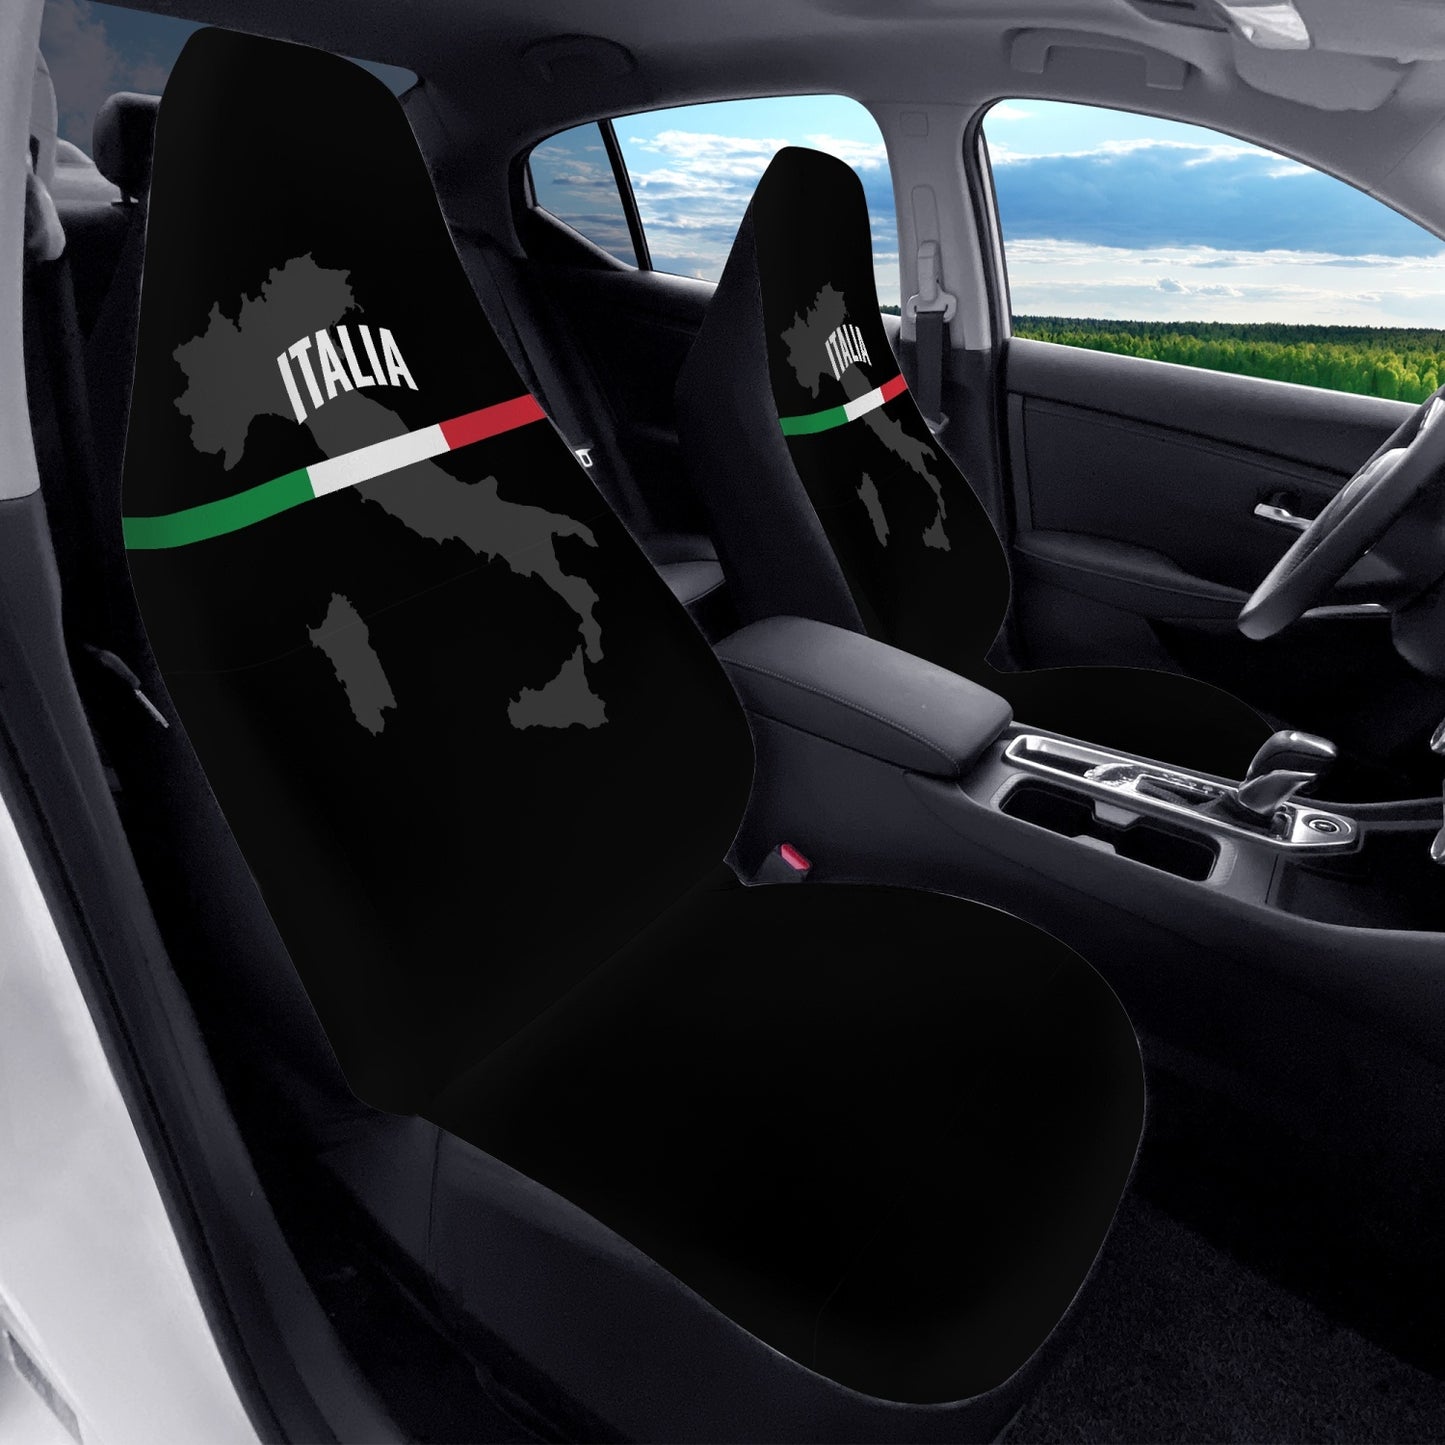 Italia black Car Seats Cover 2Pcs